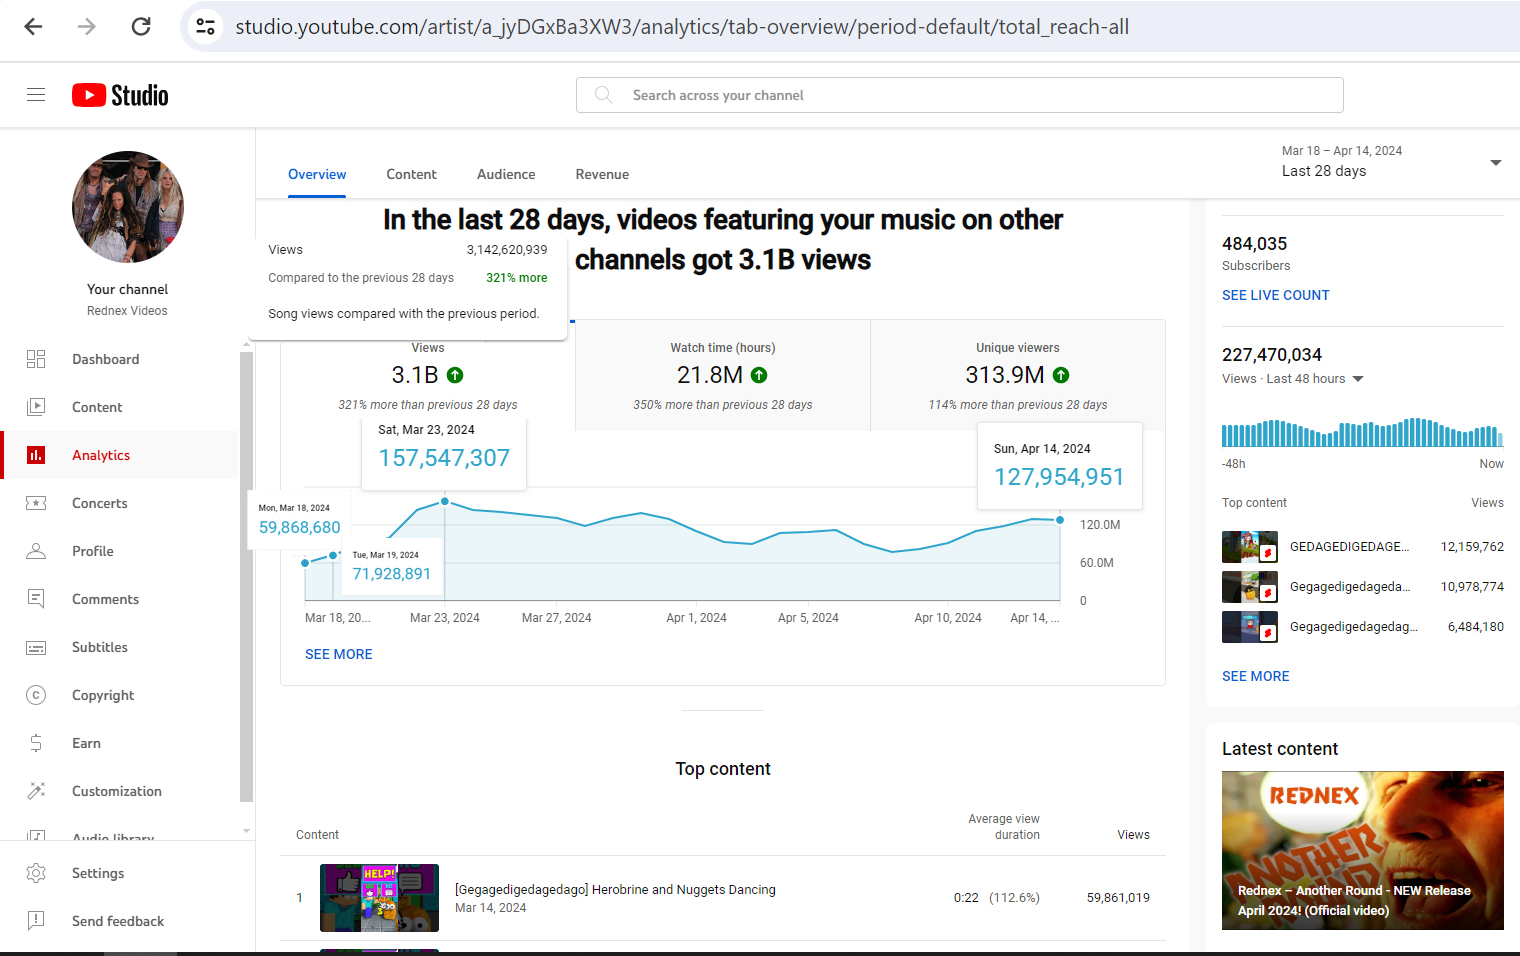 "Cotton Eye Joe" - Weltrekord auf YouTube: Drei Milliarden Aufrufe in 26 Tagen (Die Bildrechte liegen bei dem Verfasser der Mitteilung.)